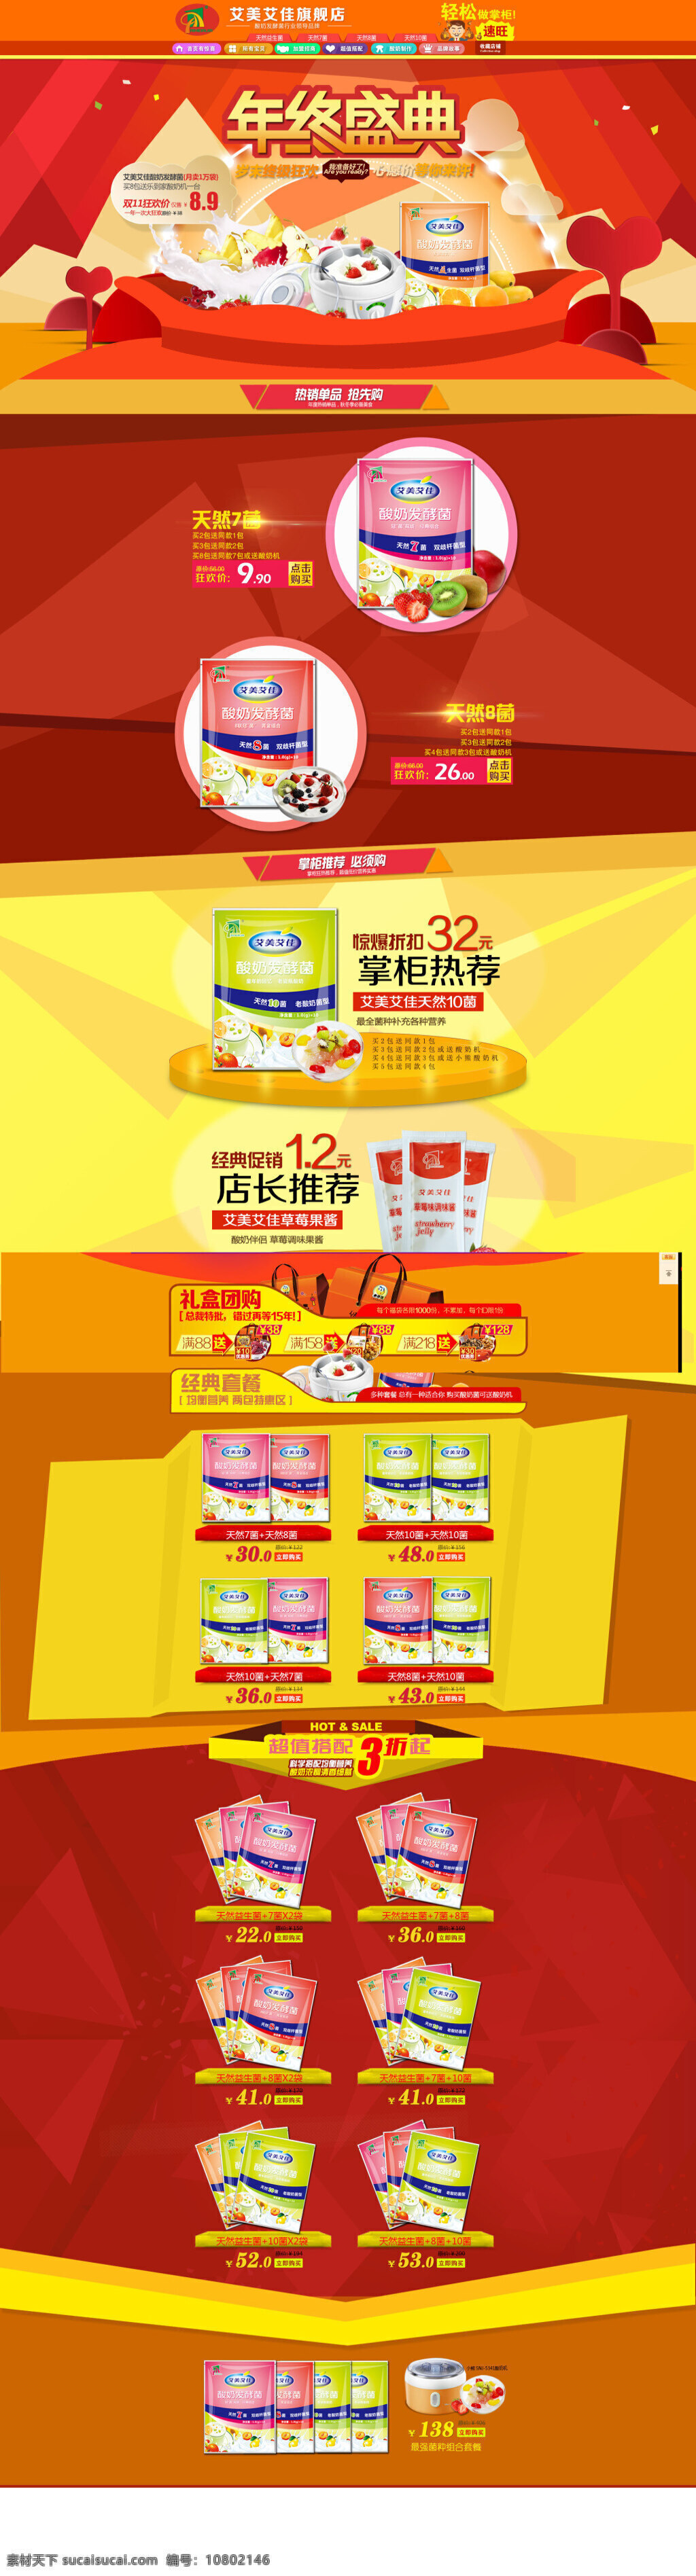 淘宝 酸奶 发酵 促销活动 海报 打折 活动打折海报 促销海报 活动海报 红色